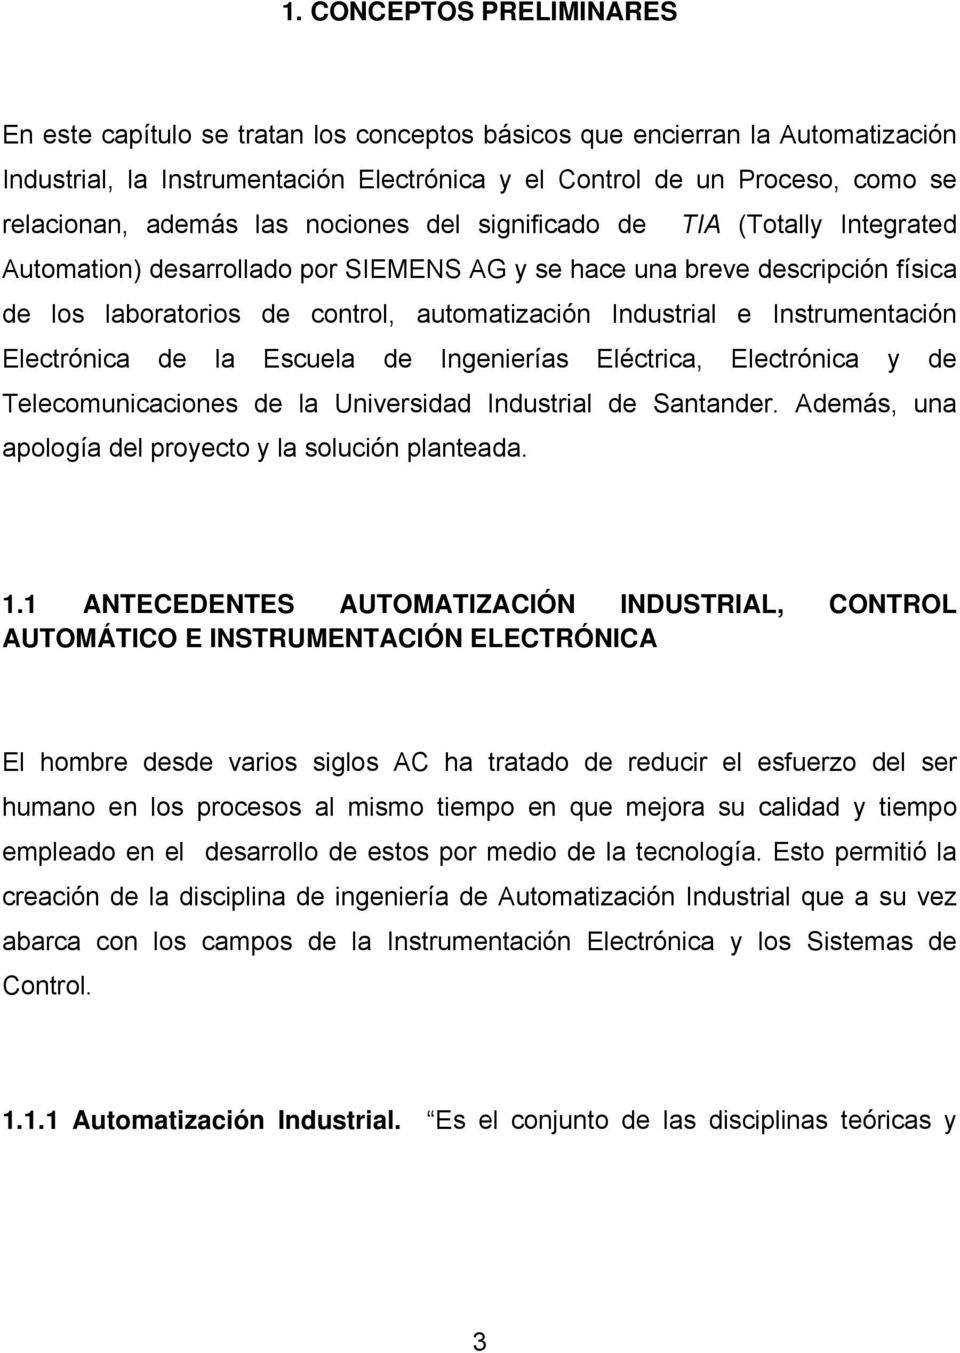 e Instrumentación Electrónica de la Escuela de Ingenierías Eléctrica, Electrónica y de Telecomunicaciones de la Universidad Industrial de Santander.